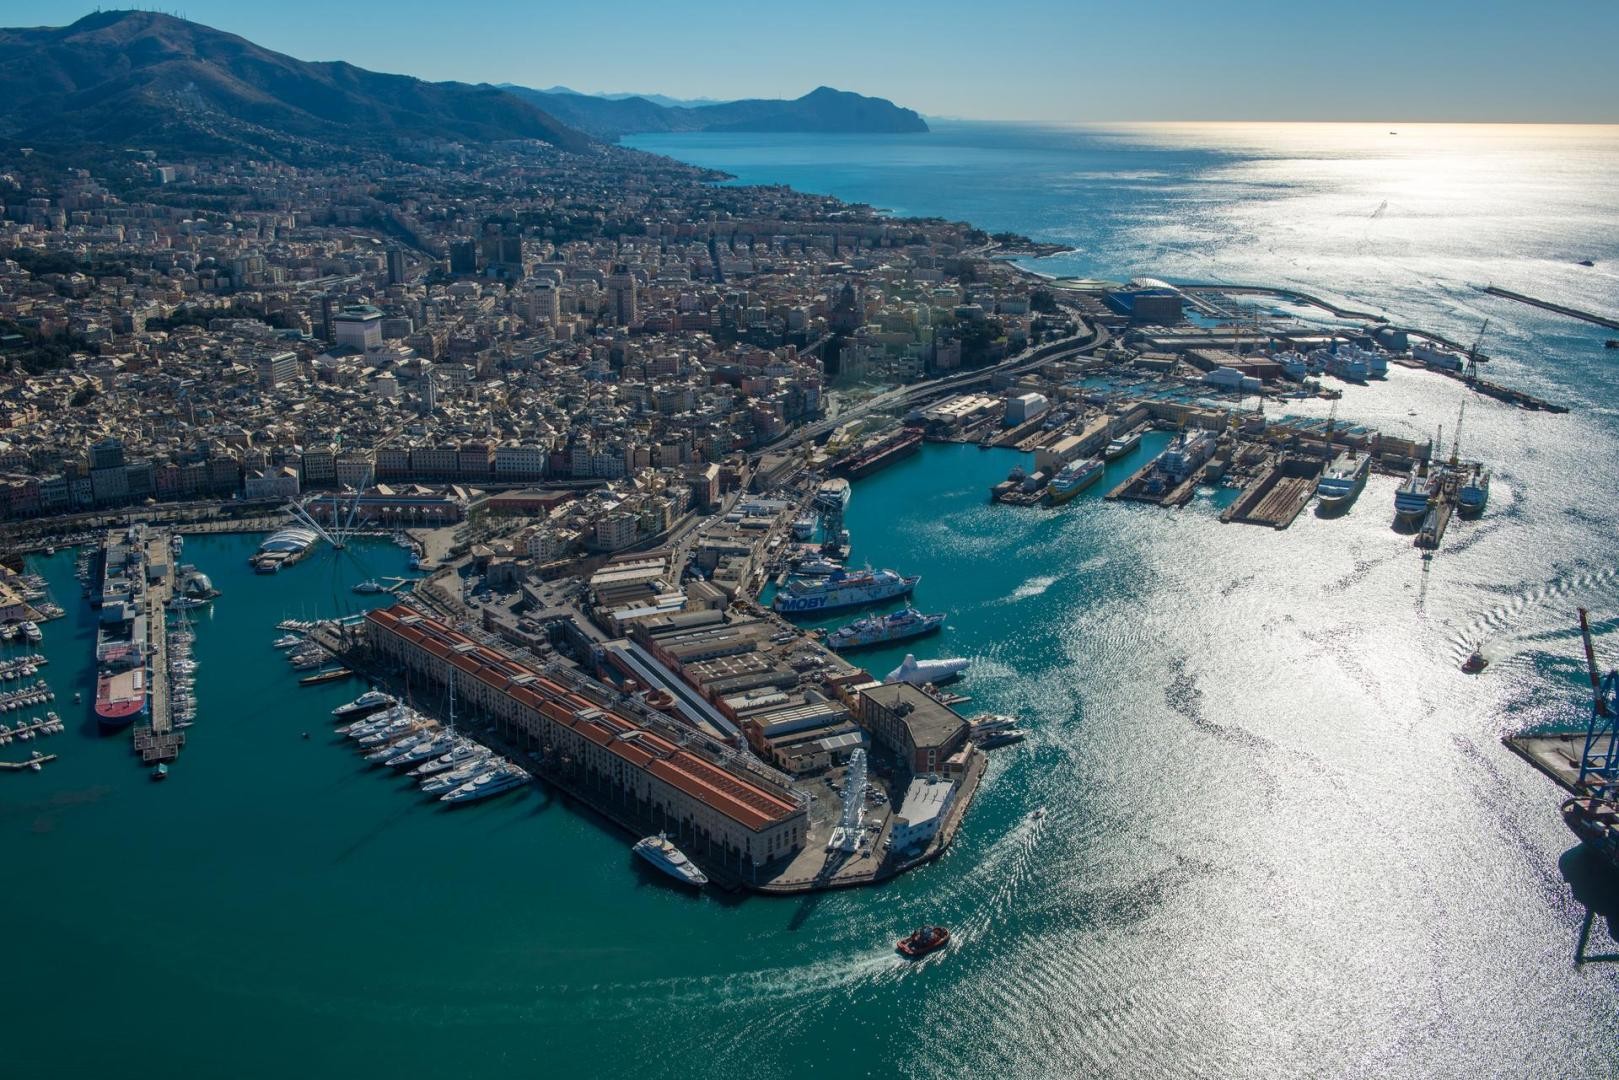 Genova for Yachting parteciperà al Salone Nautico di Genova